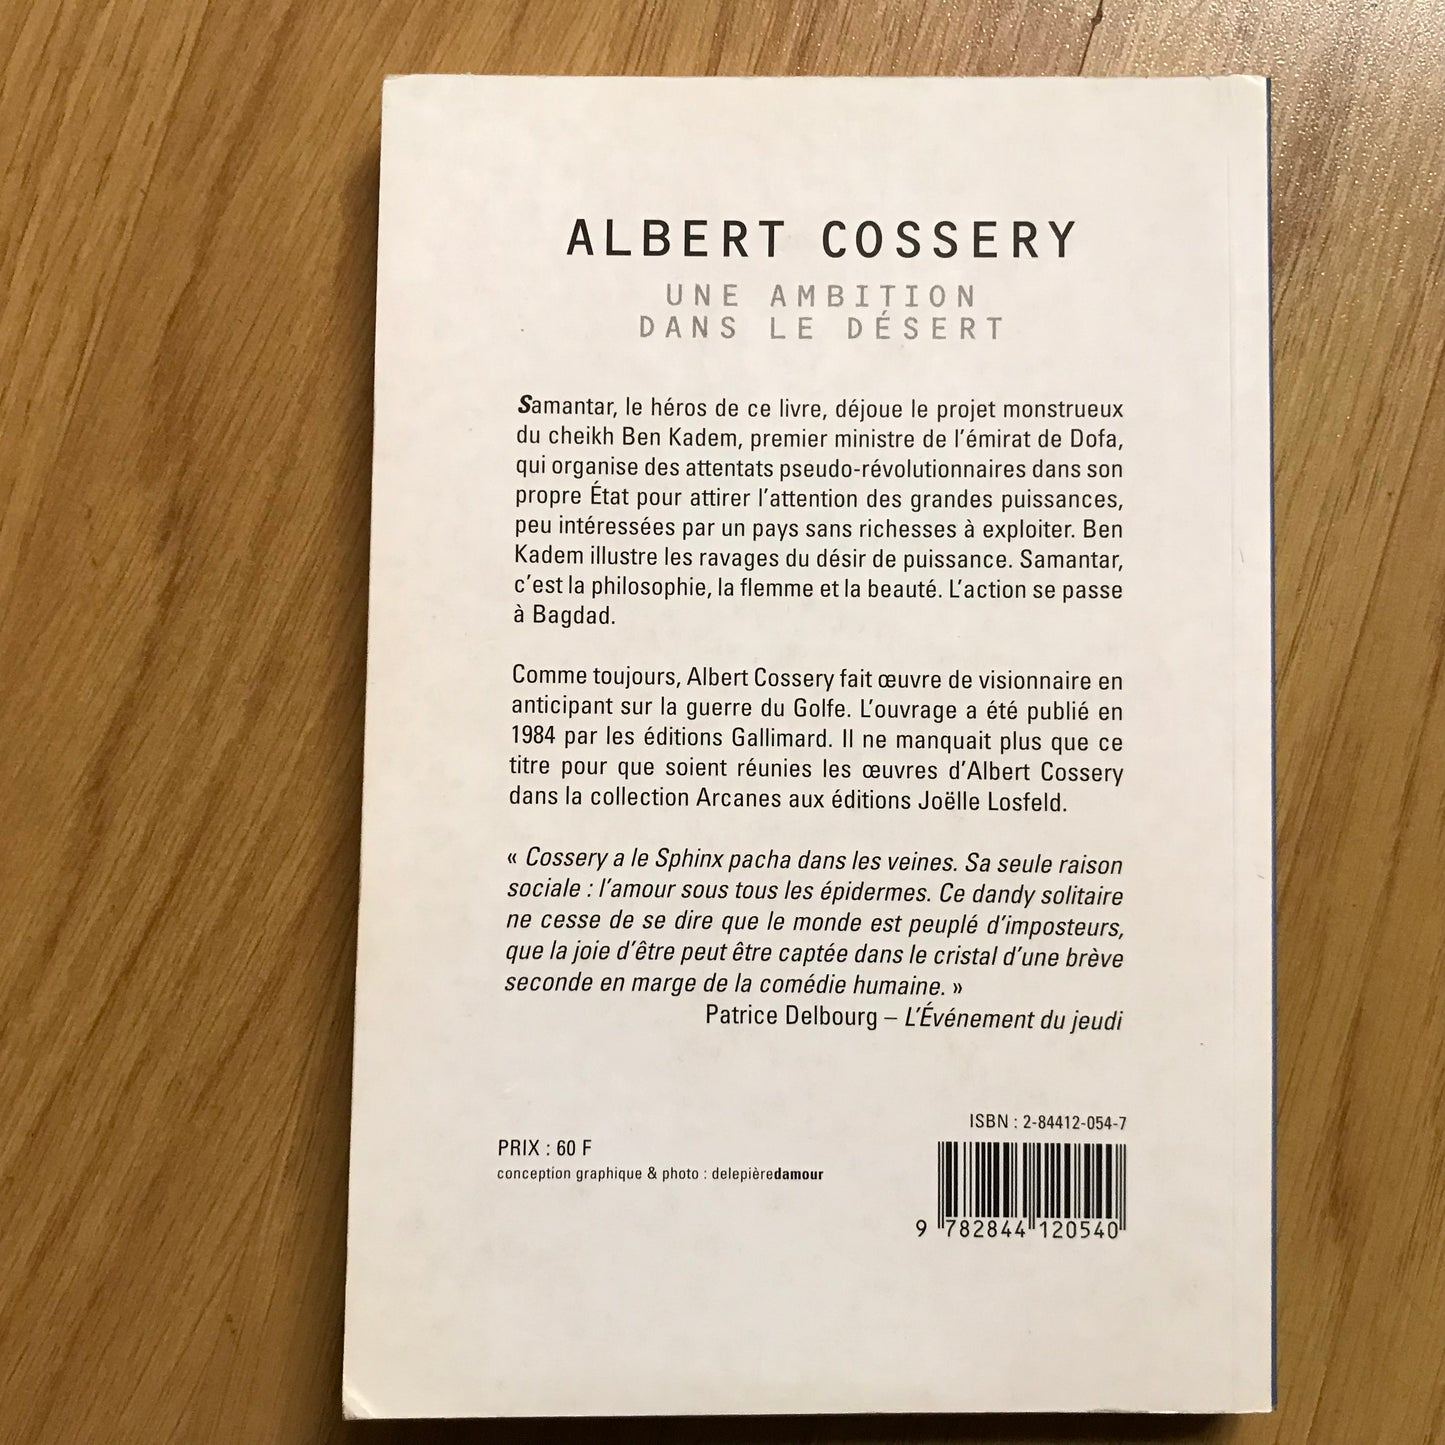 Cossery, Albert - Une ambition dans le désert